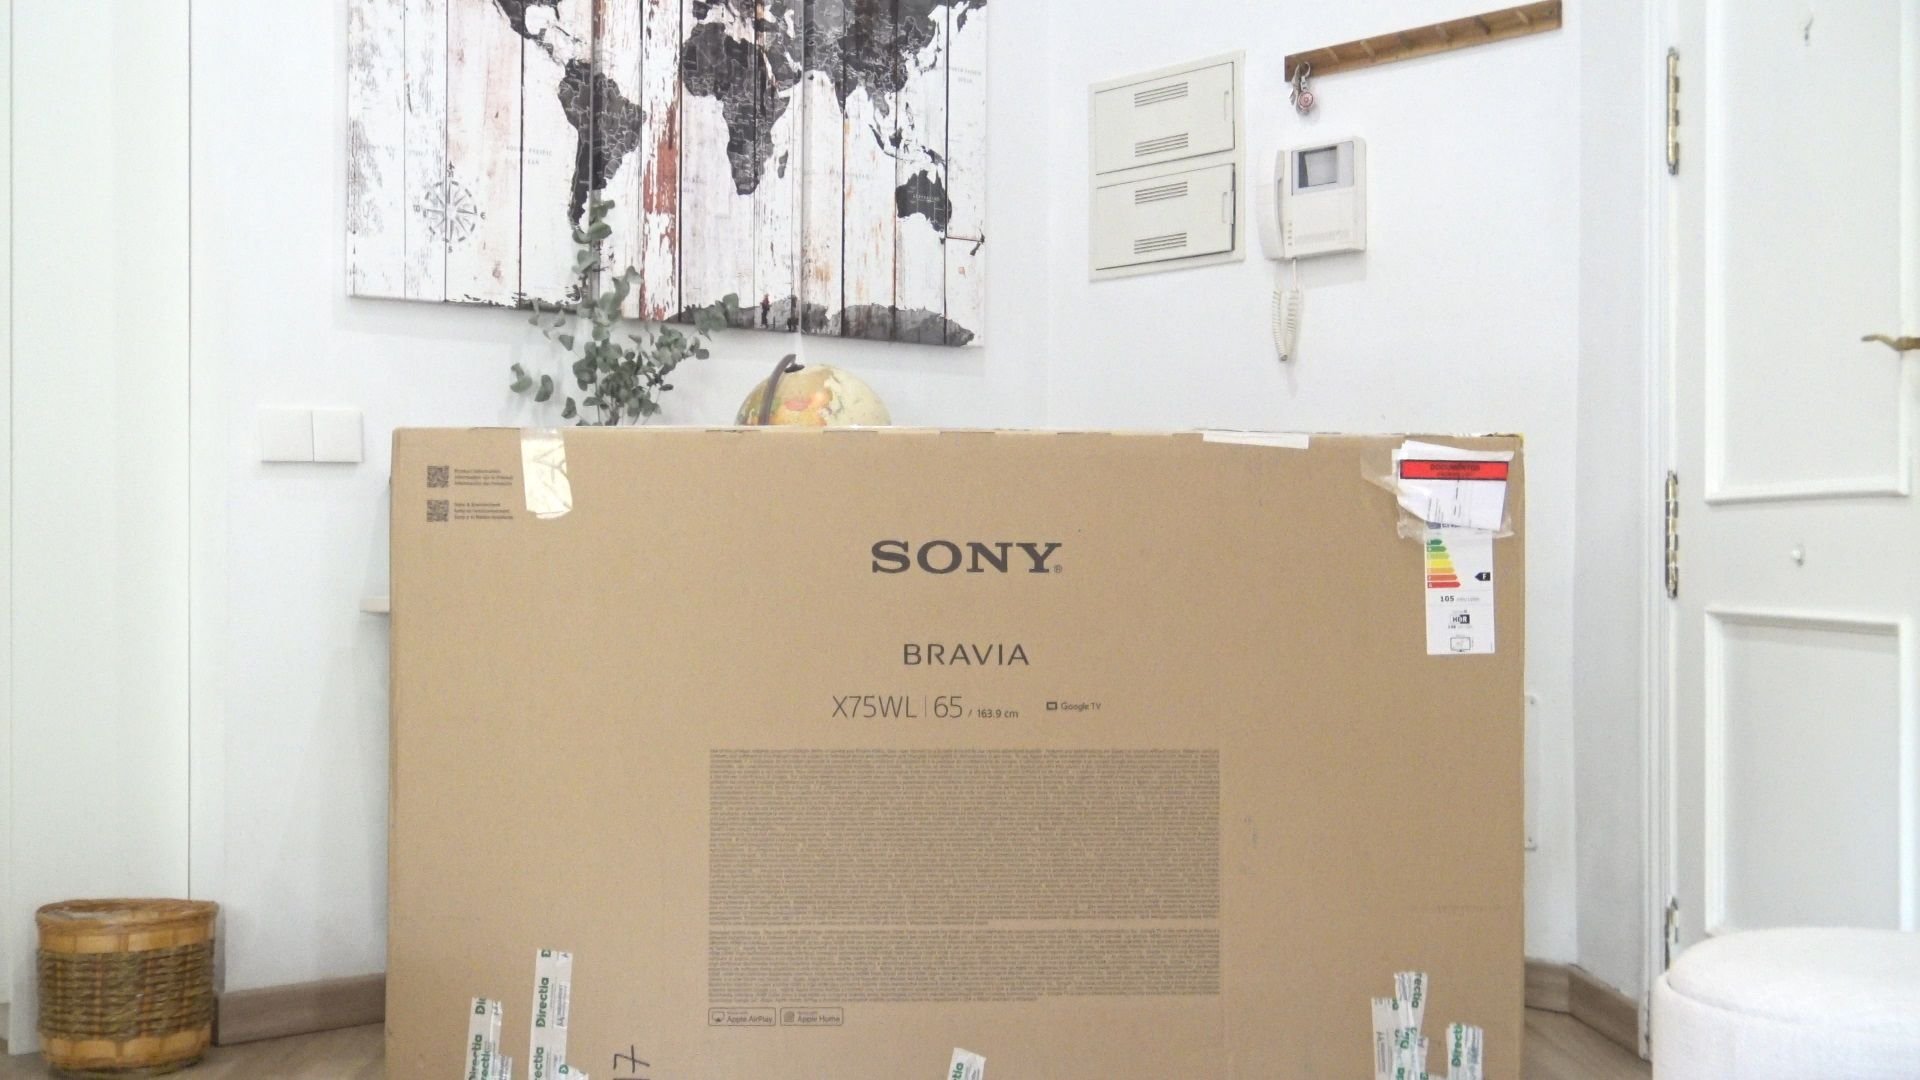 Sony X75WL: Unboxing y primeras impresiones del televisor Direct LED más económico del fabricante